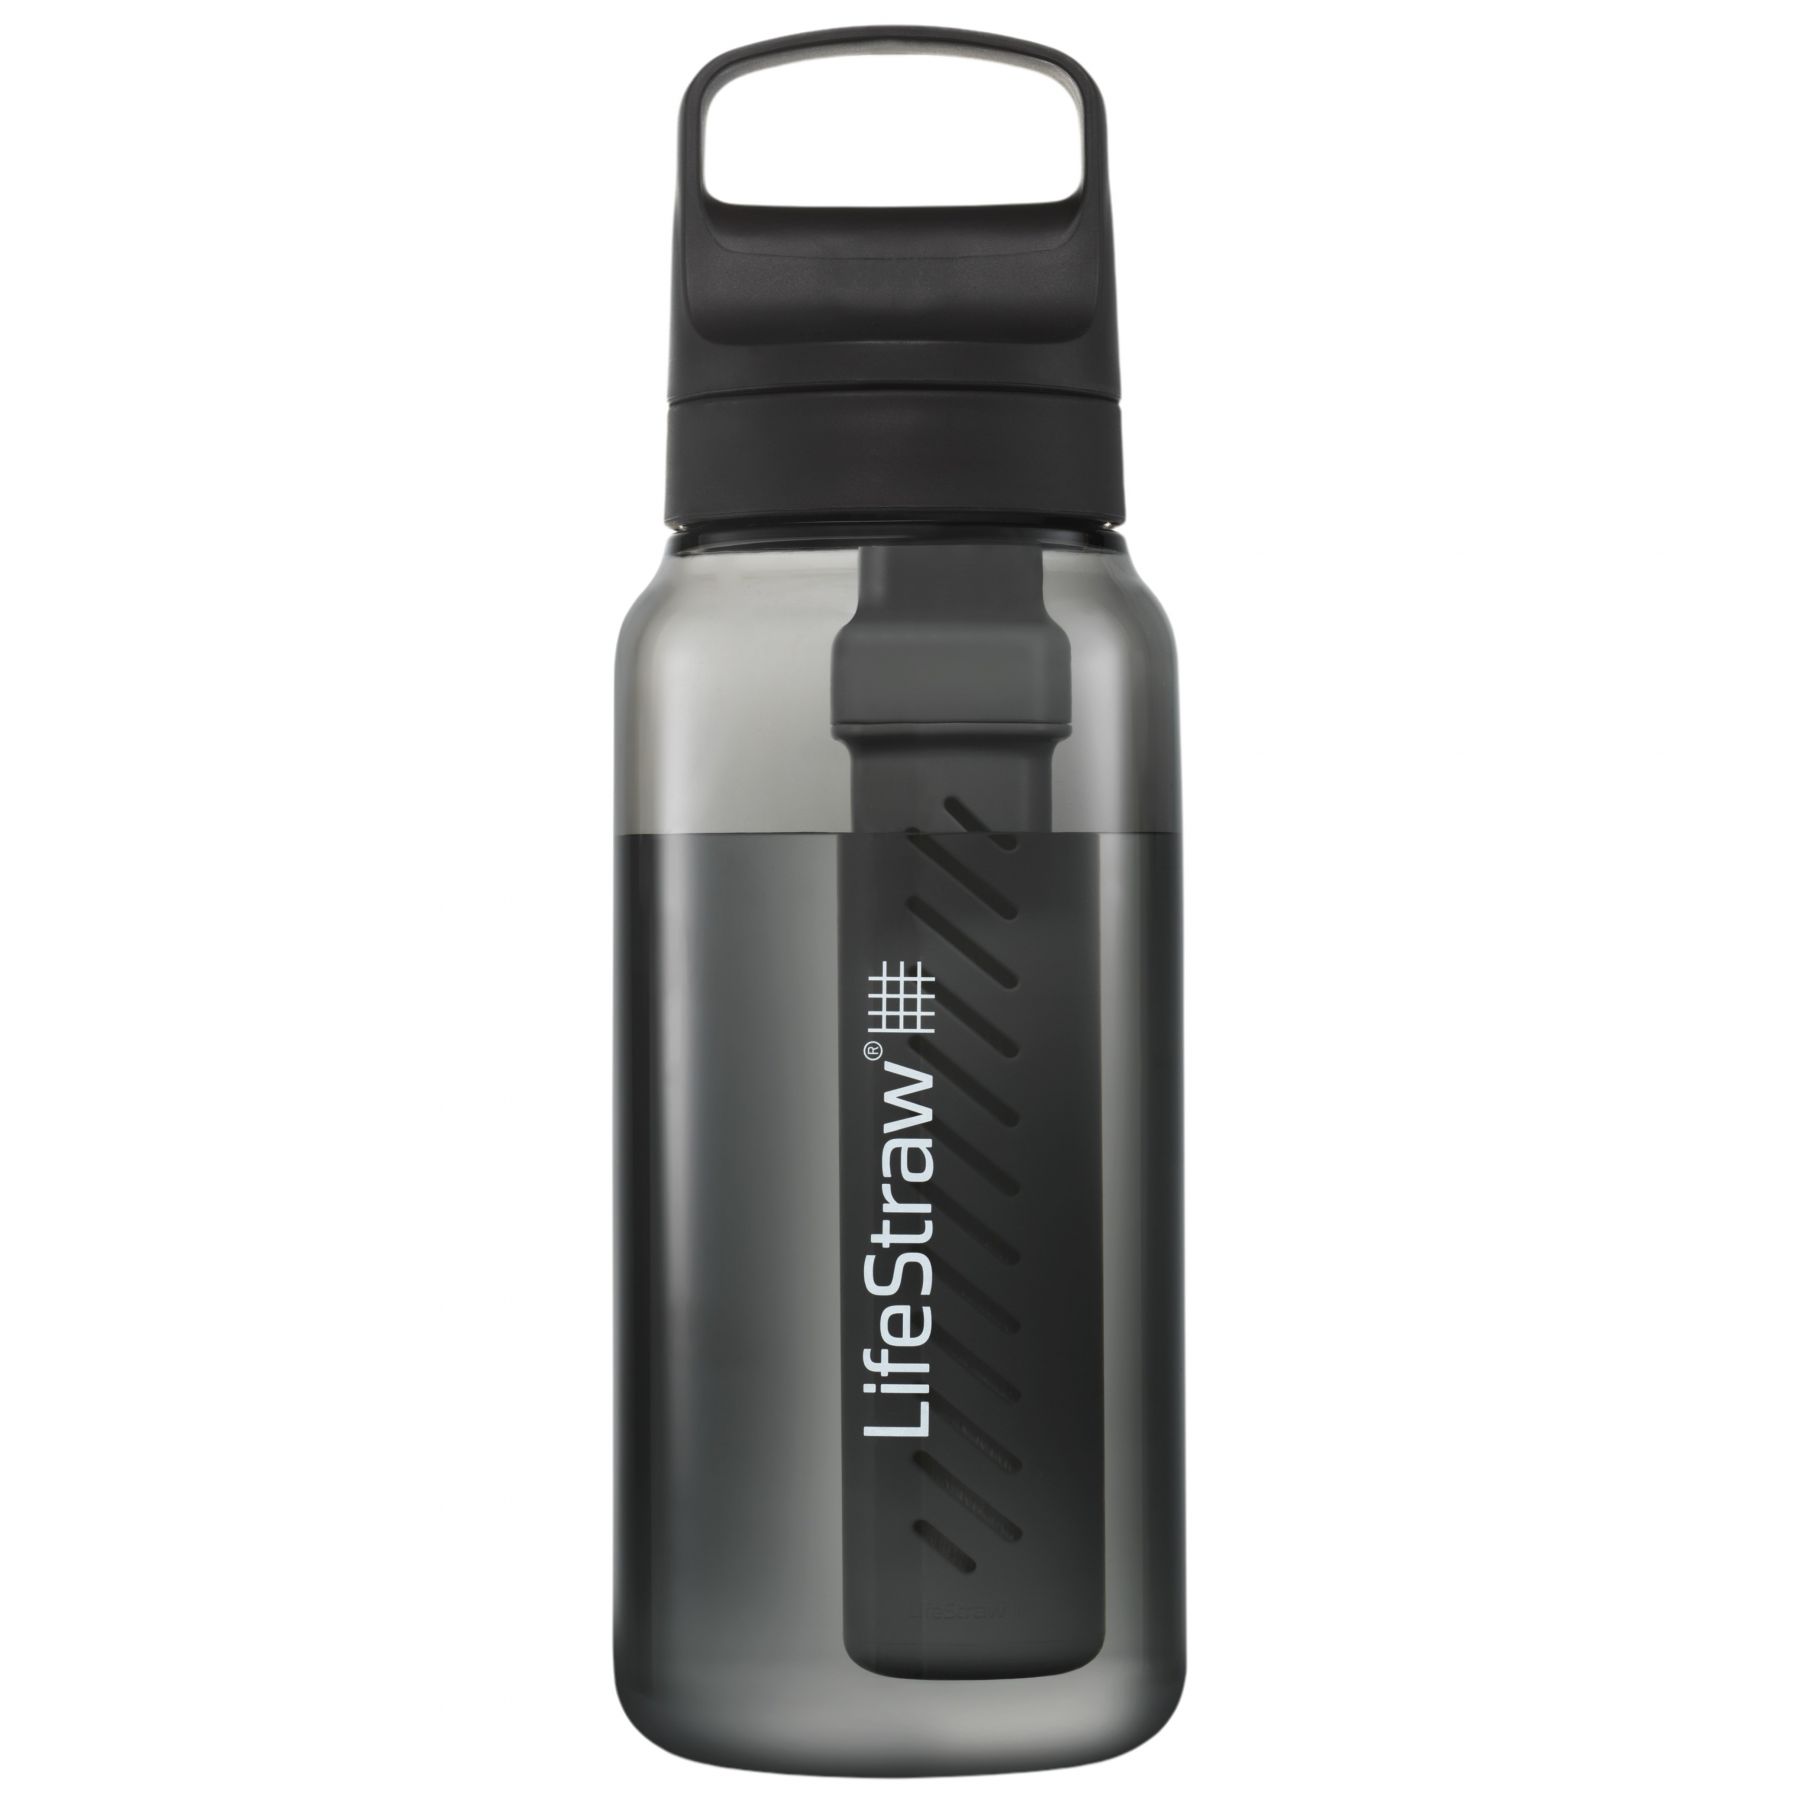 Brug LifeStraw Go 2.0 Series, 1L, sort til en forbedret oplevelse